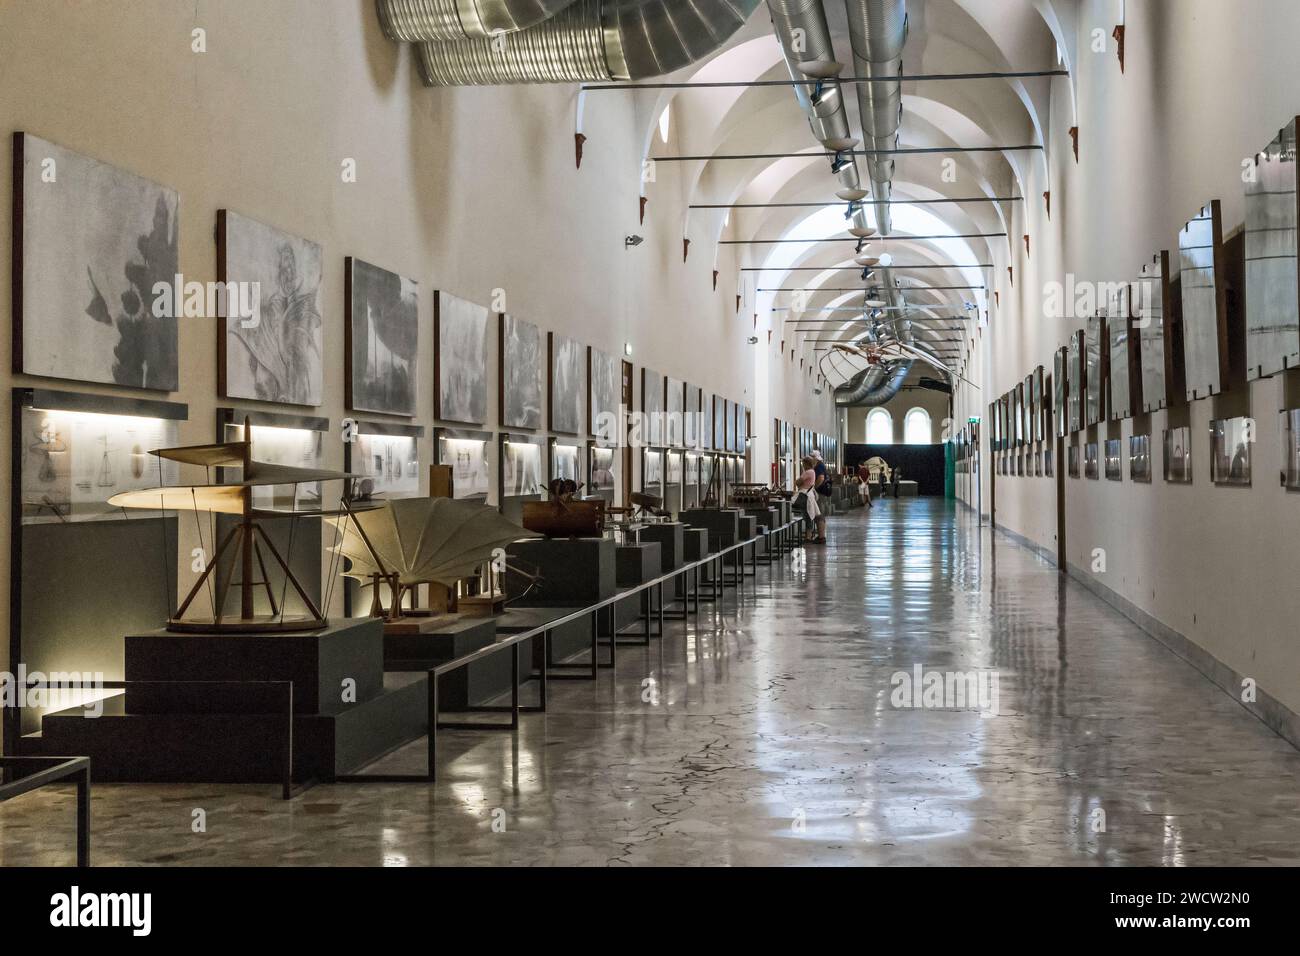 MILANO, ITALIA - 19 MAGGIO 2018: Si tratta di una galleria ad arco con esposizione di layout di da Vinci nell'ex monastero benedettino medievale. Foto Stock